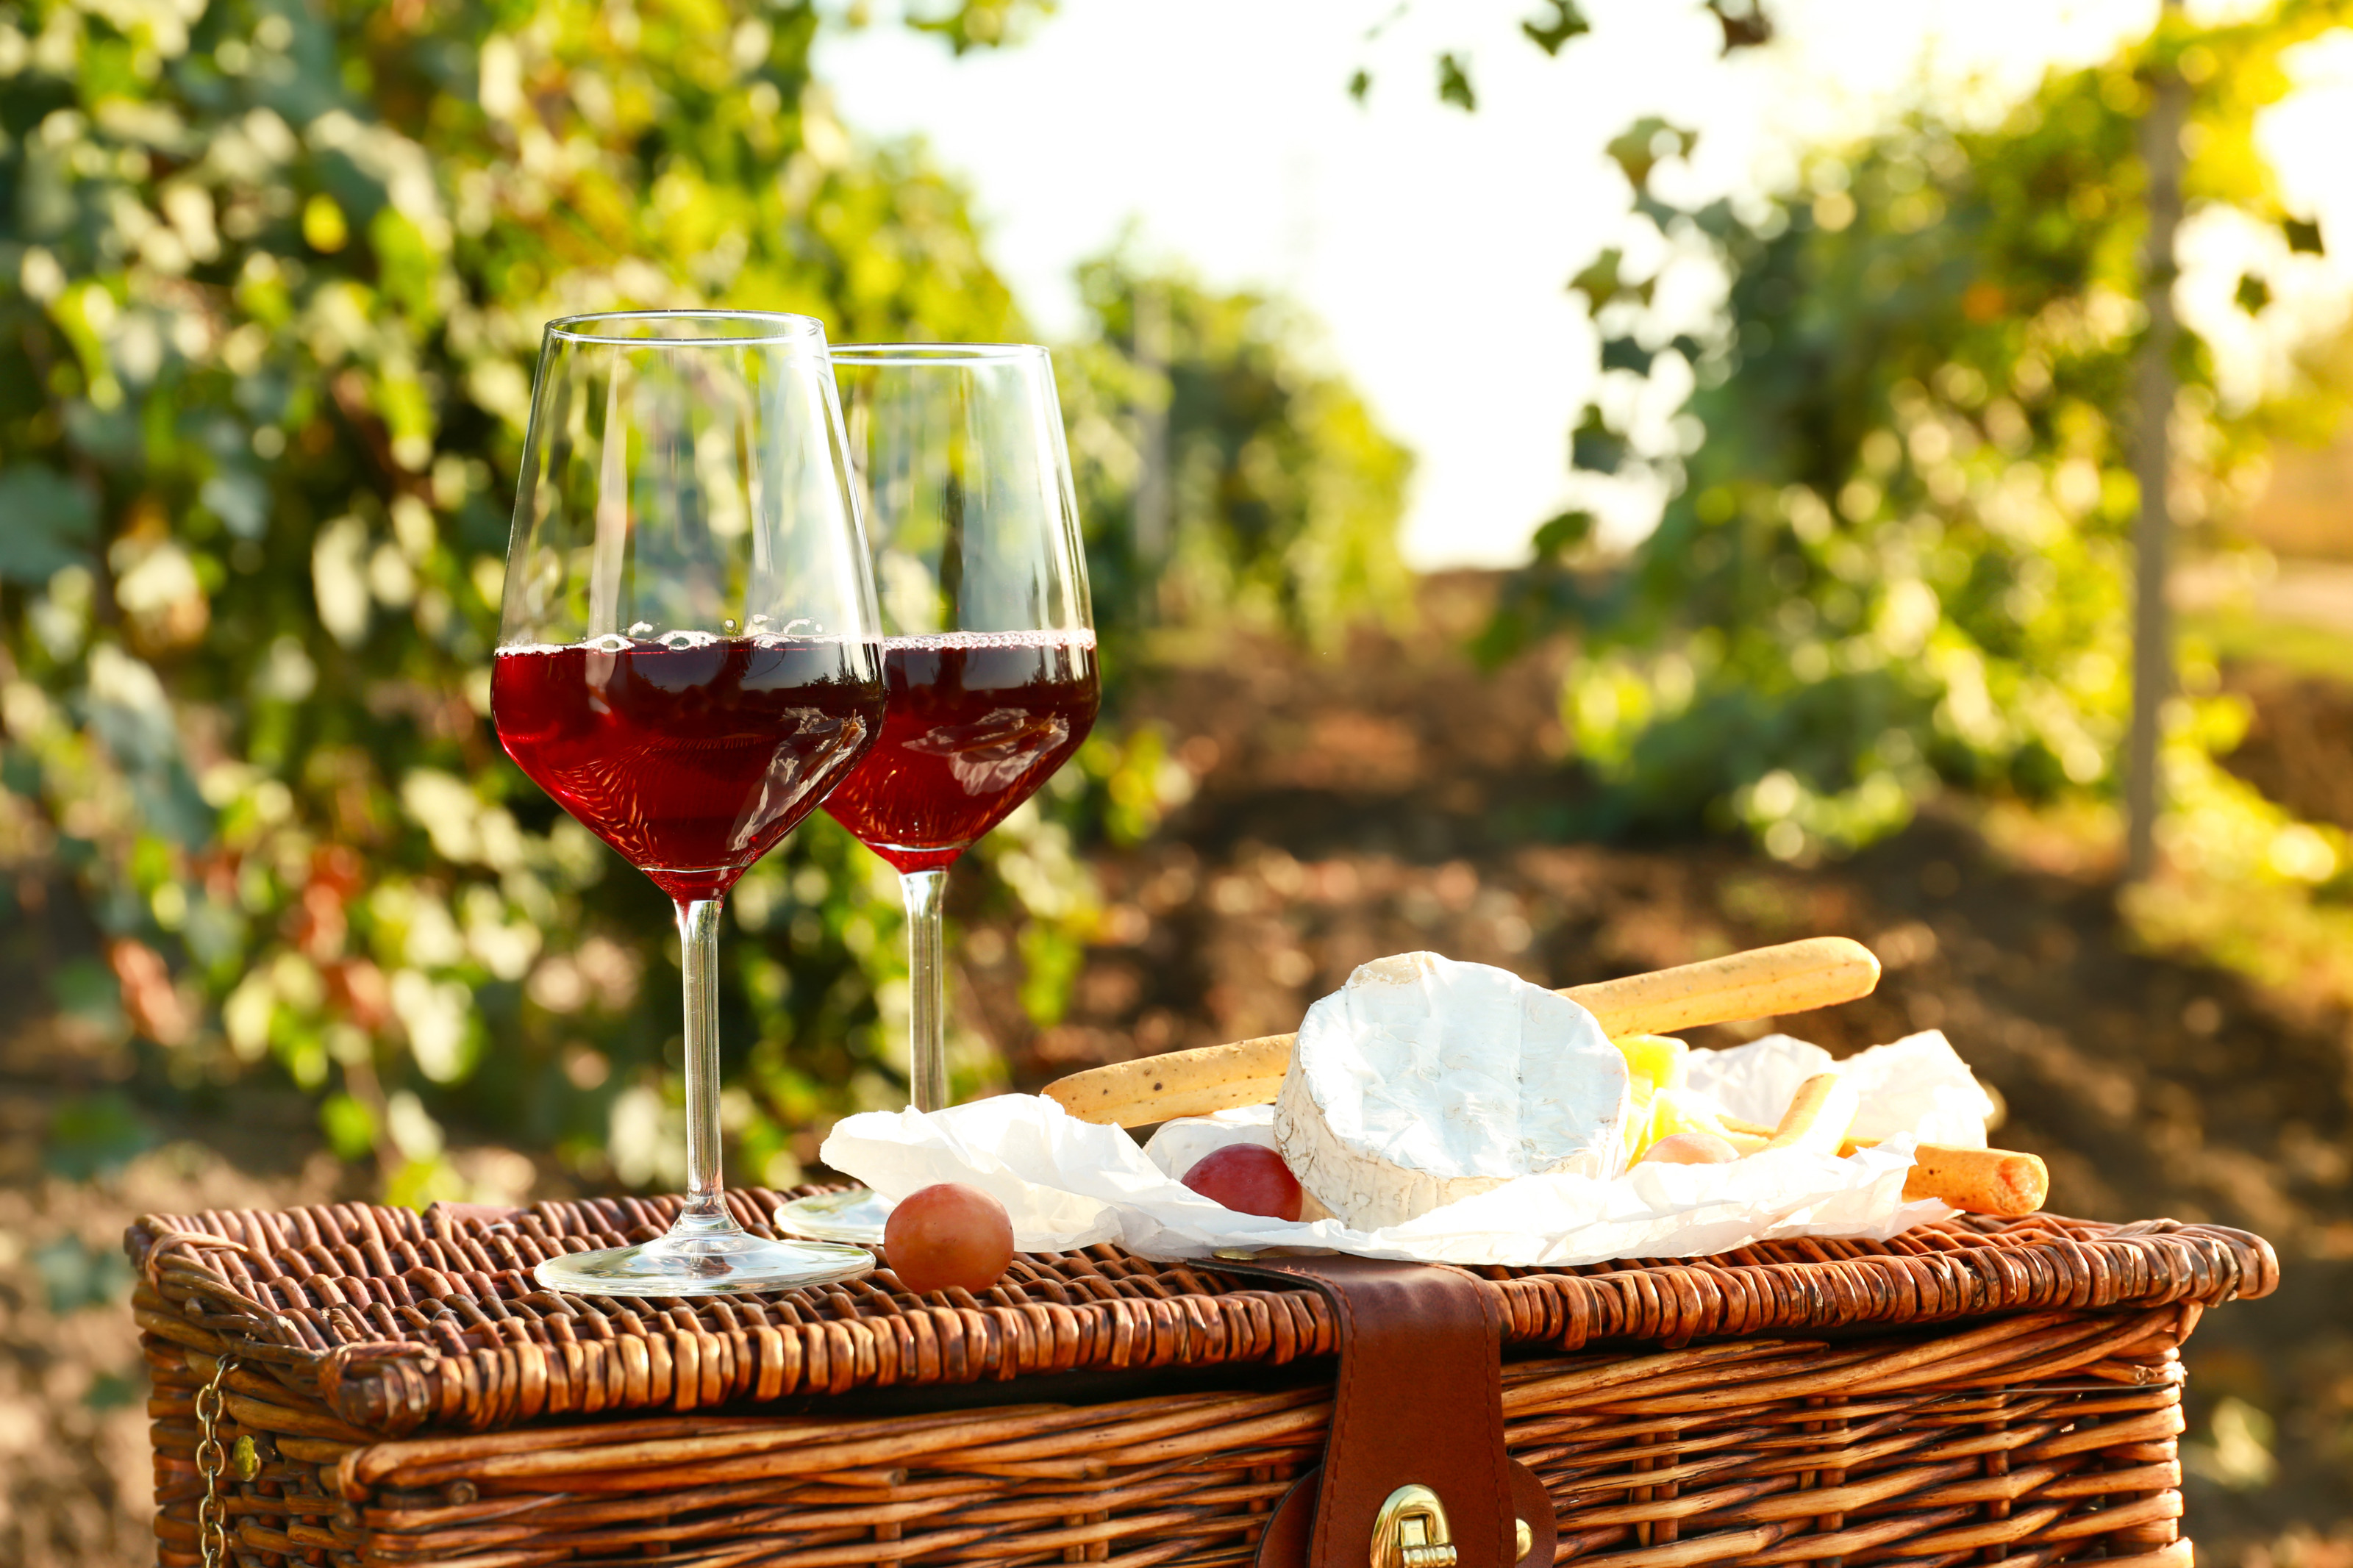 Zwei Weingläser gefüllt mit Rotwein auf Picknickkorb stehend, daneben auf Papier Käse, Grissini und Weintrauben, im Hintergrund verschwommen Weinreben